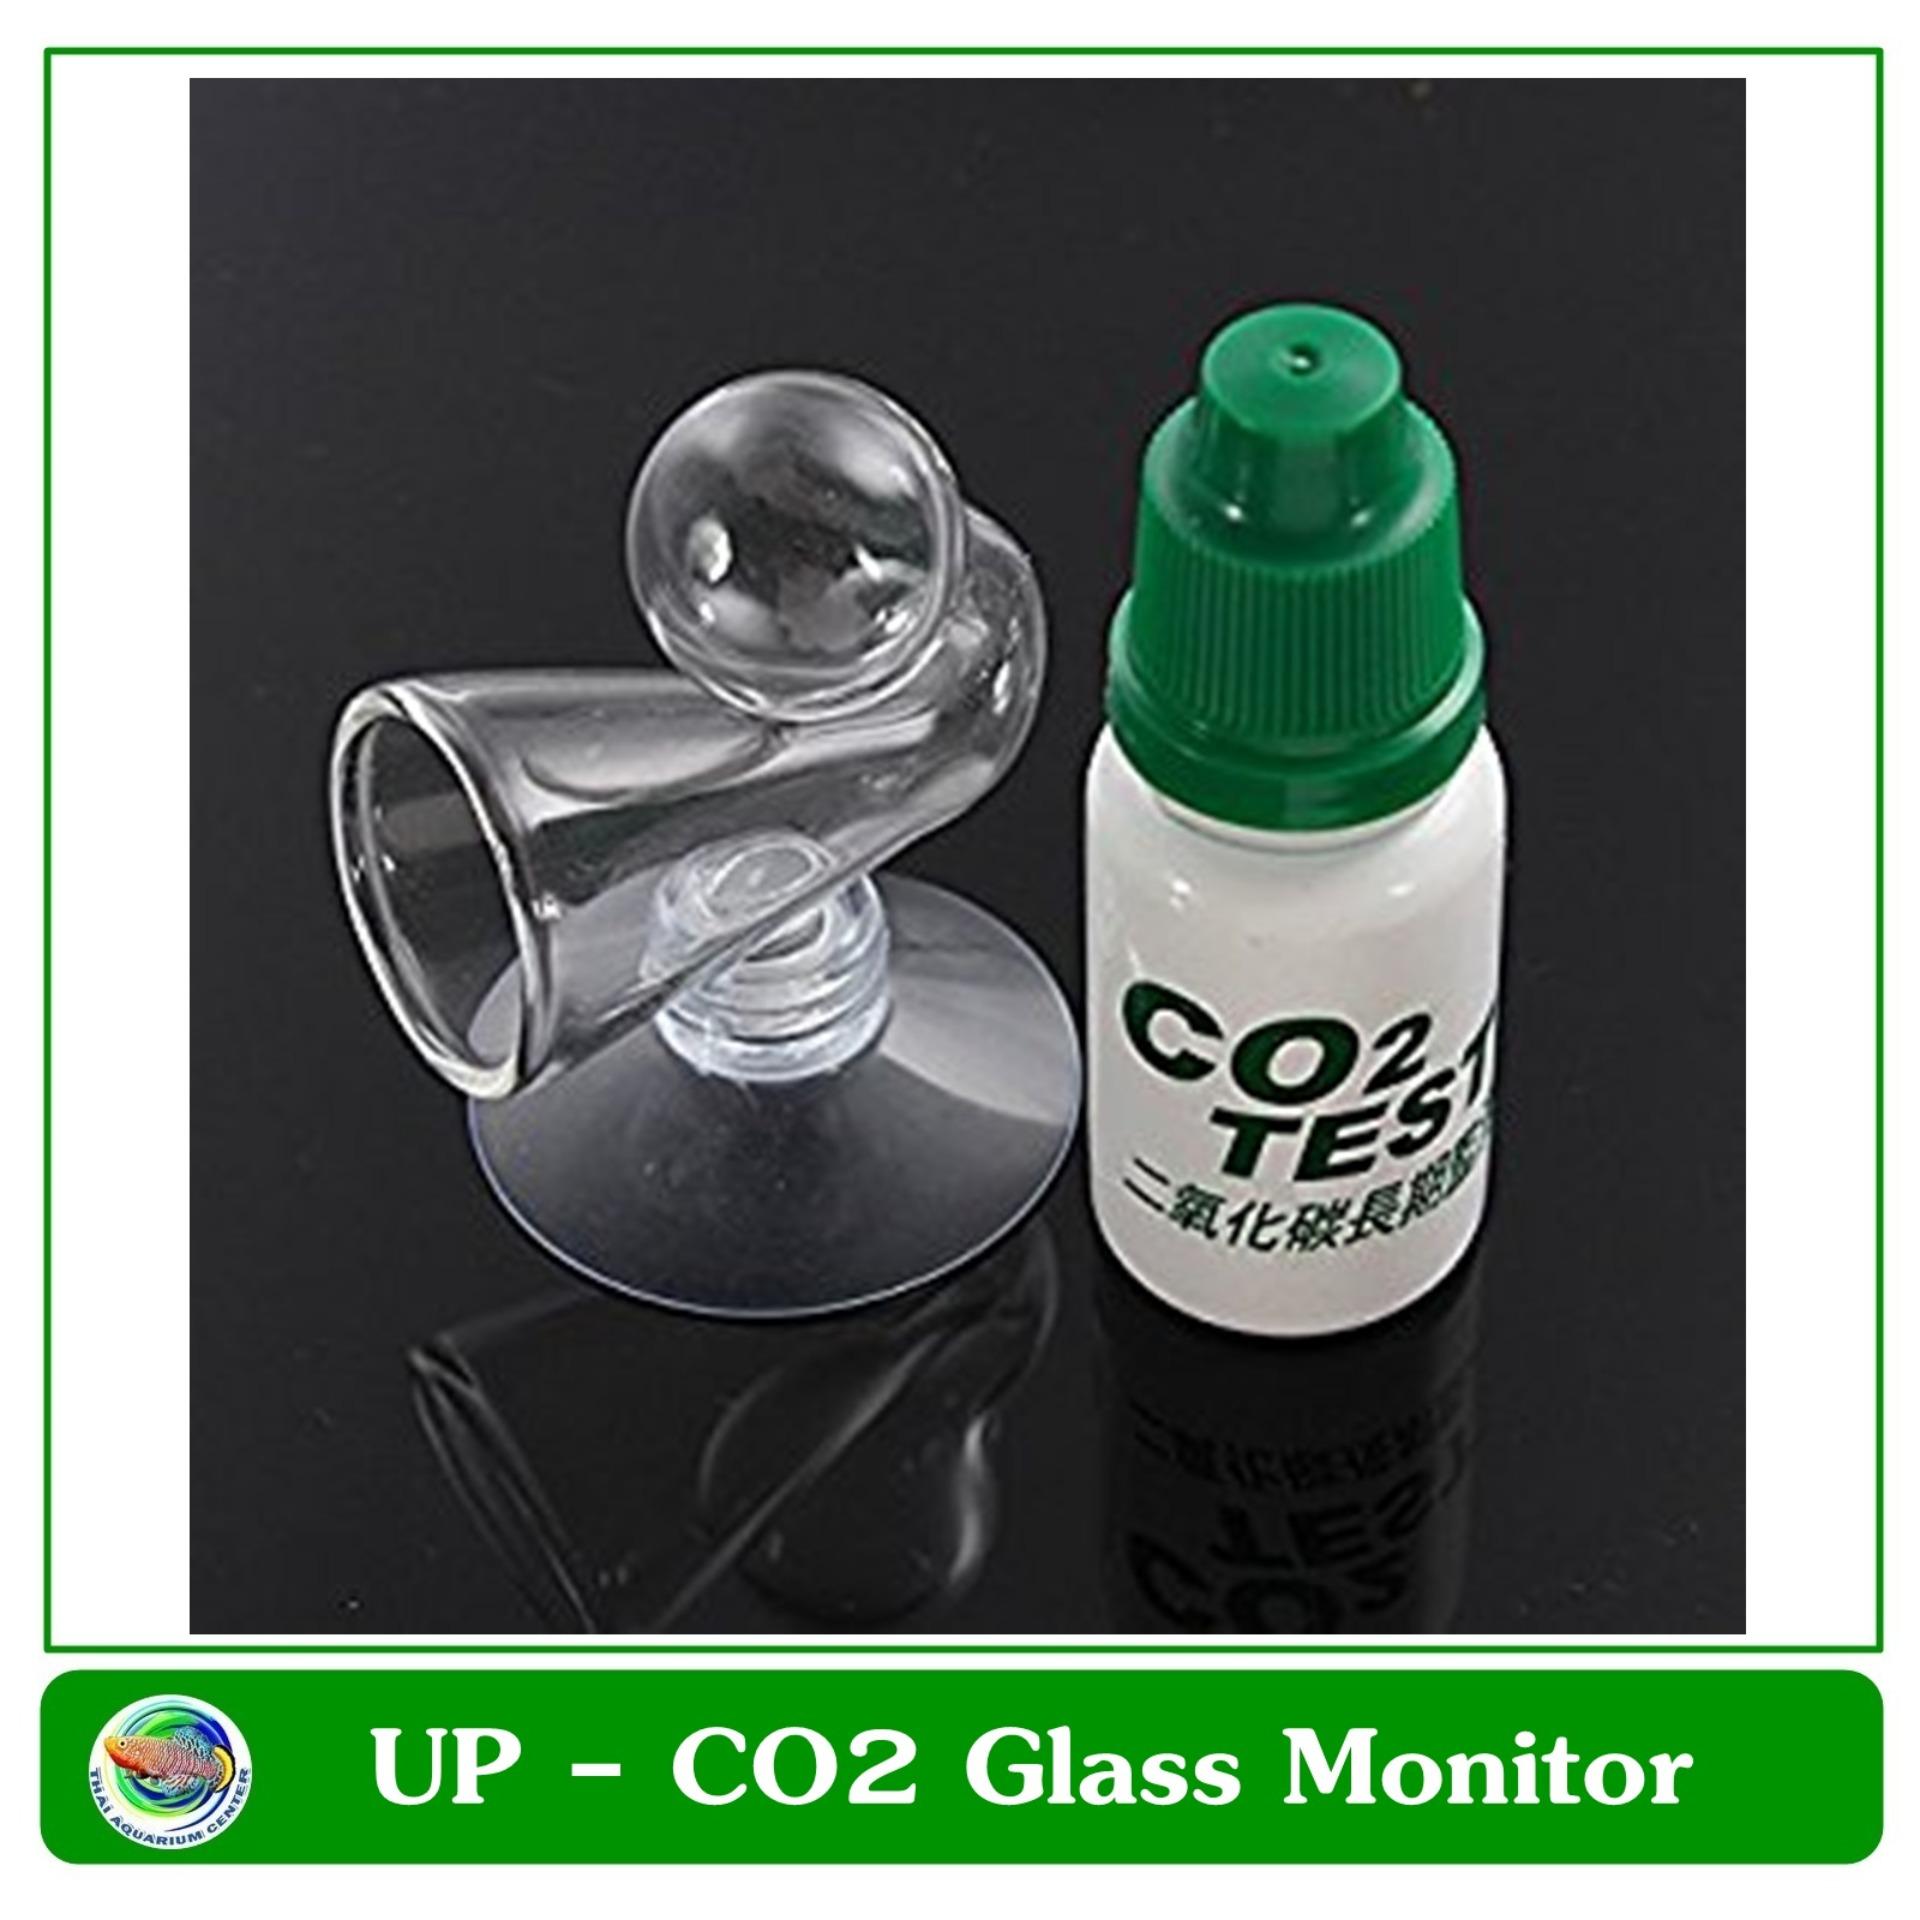 ชุดทดสอบน้ำยาทดสอบระดับ Co2 และ pH สำหรับตู้ปลาและตู้ไม้น้ำ (น้ำยา+หลอดแก้วเทส) ทดสอบคาร์บอนไดออกไซด์ Aquatic Co2 Glass set for Drop Checker pH Monitor